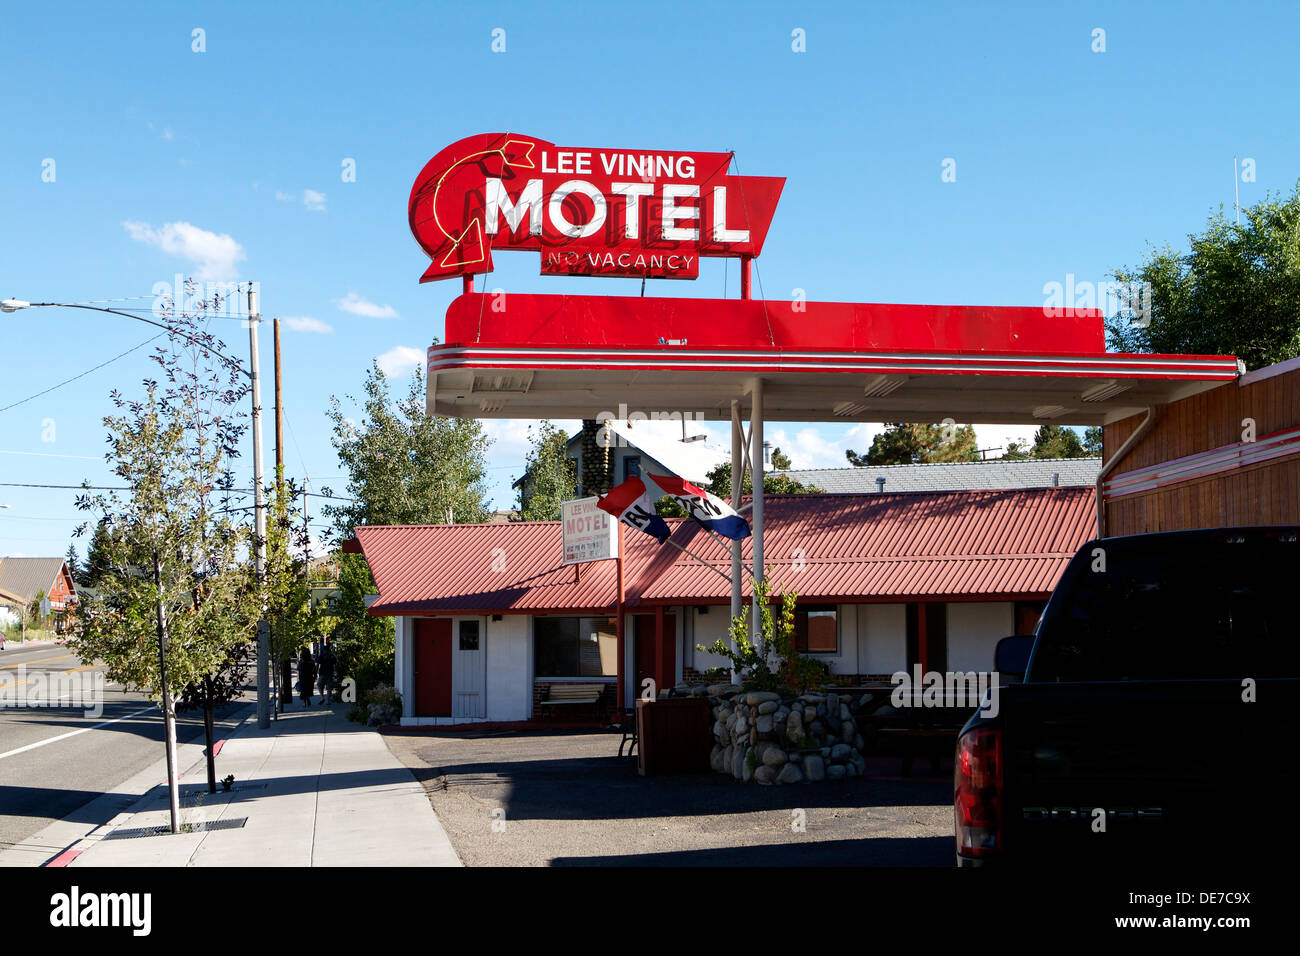 Lee vining motel sulla Scenic highway 395 nella parte orientale della Sierra Nevada, in California Foto Stock